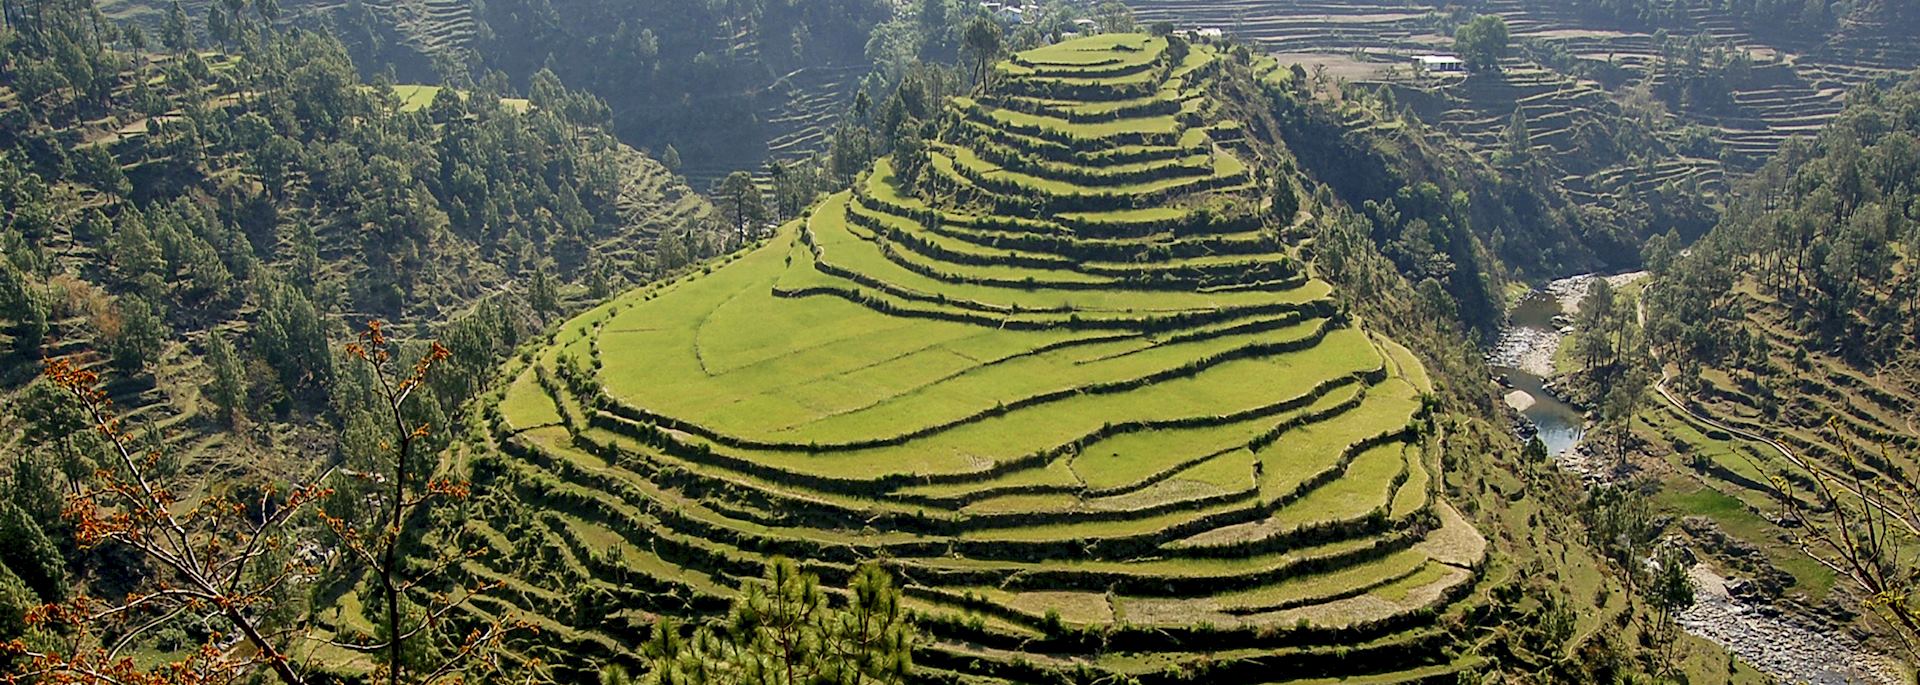 Rice terraces in Almora